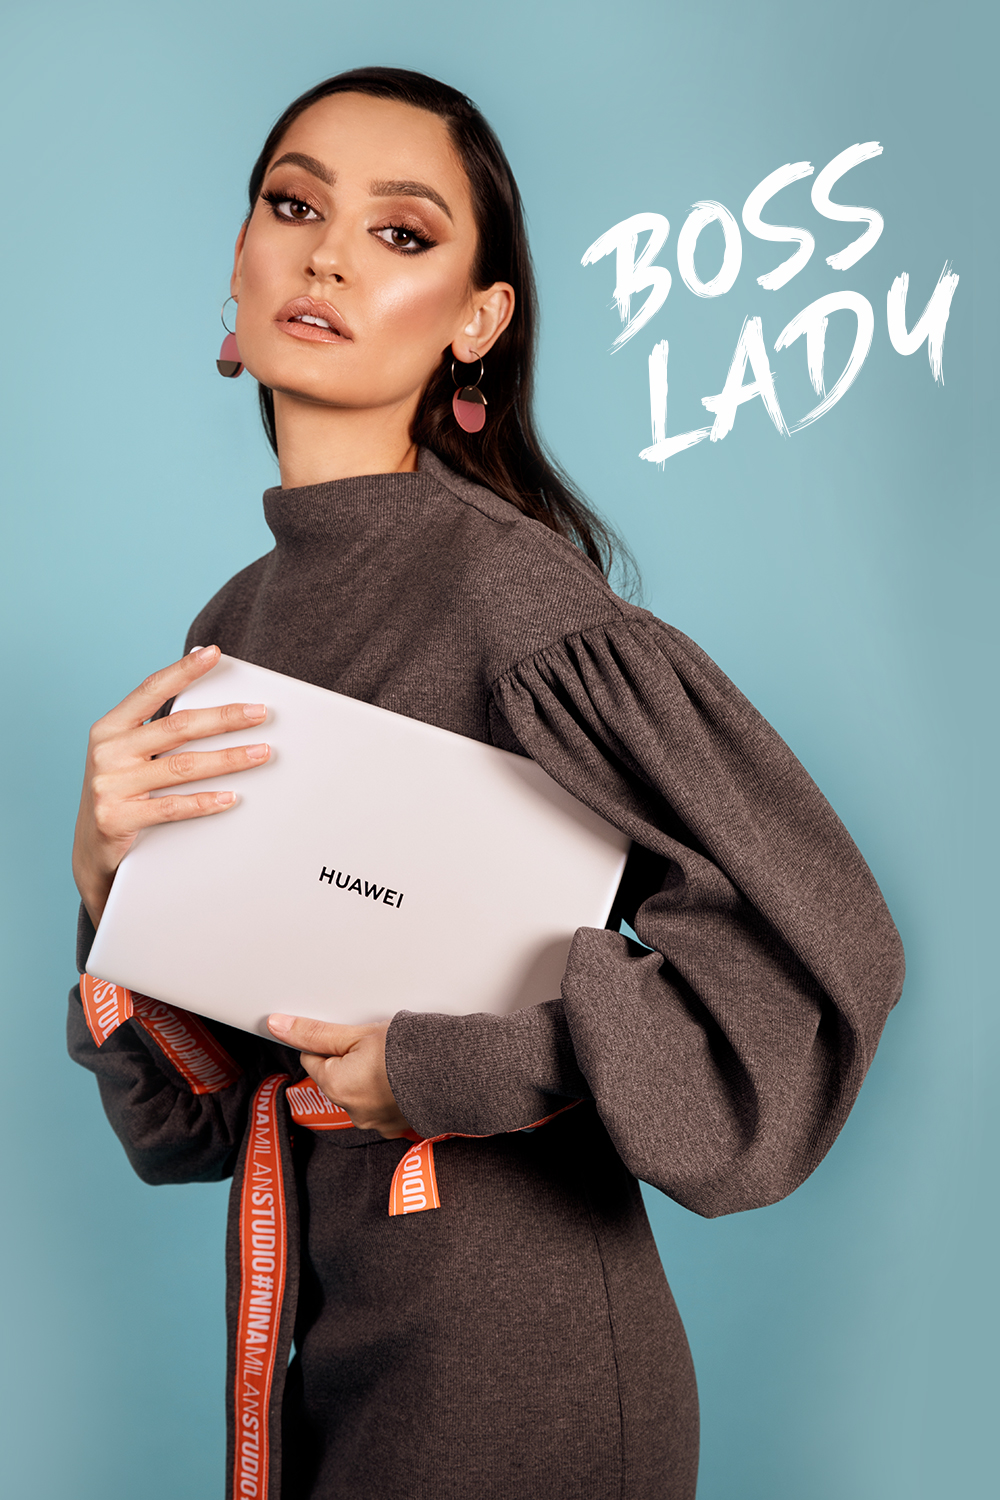 HUAWEI 2 Uz Huawei MateBook X osećaćeš se kao #ladyboss! A evo i zašto